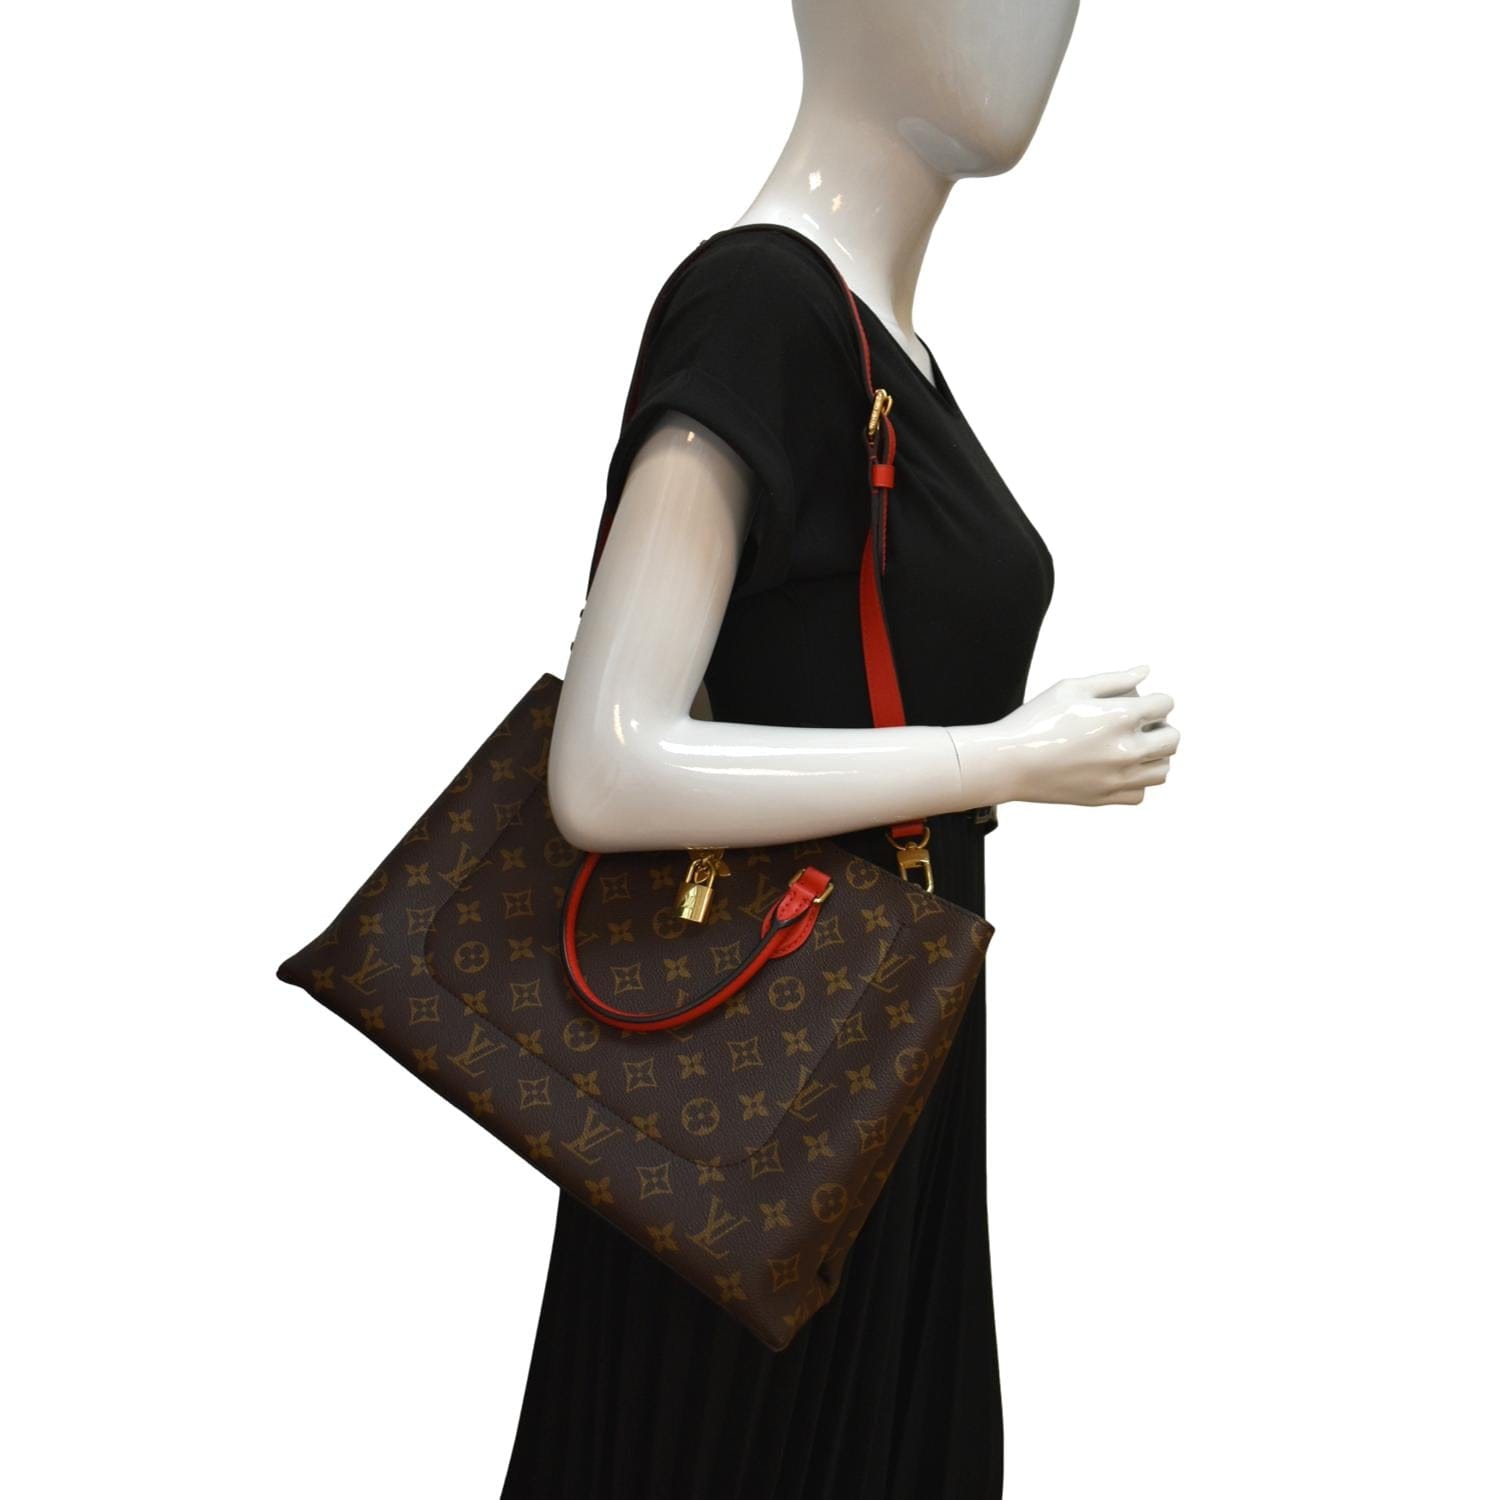 Louis Vuitton Flower Monogram Canvas Tote Shoulder Bag Cerise